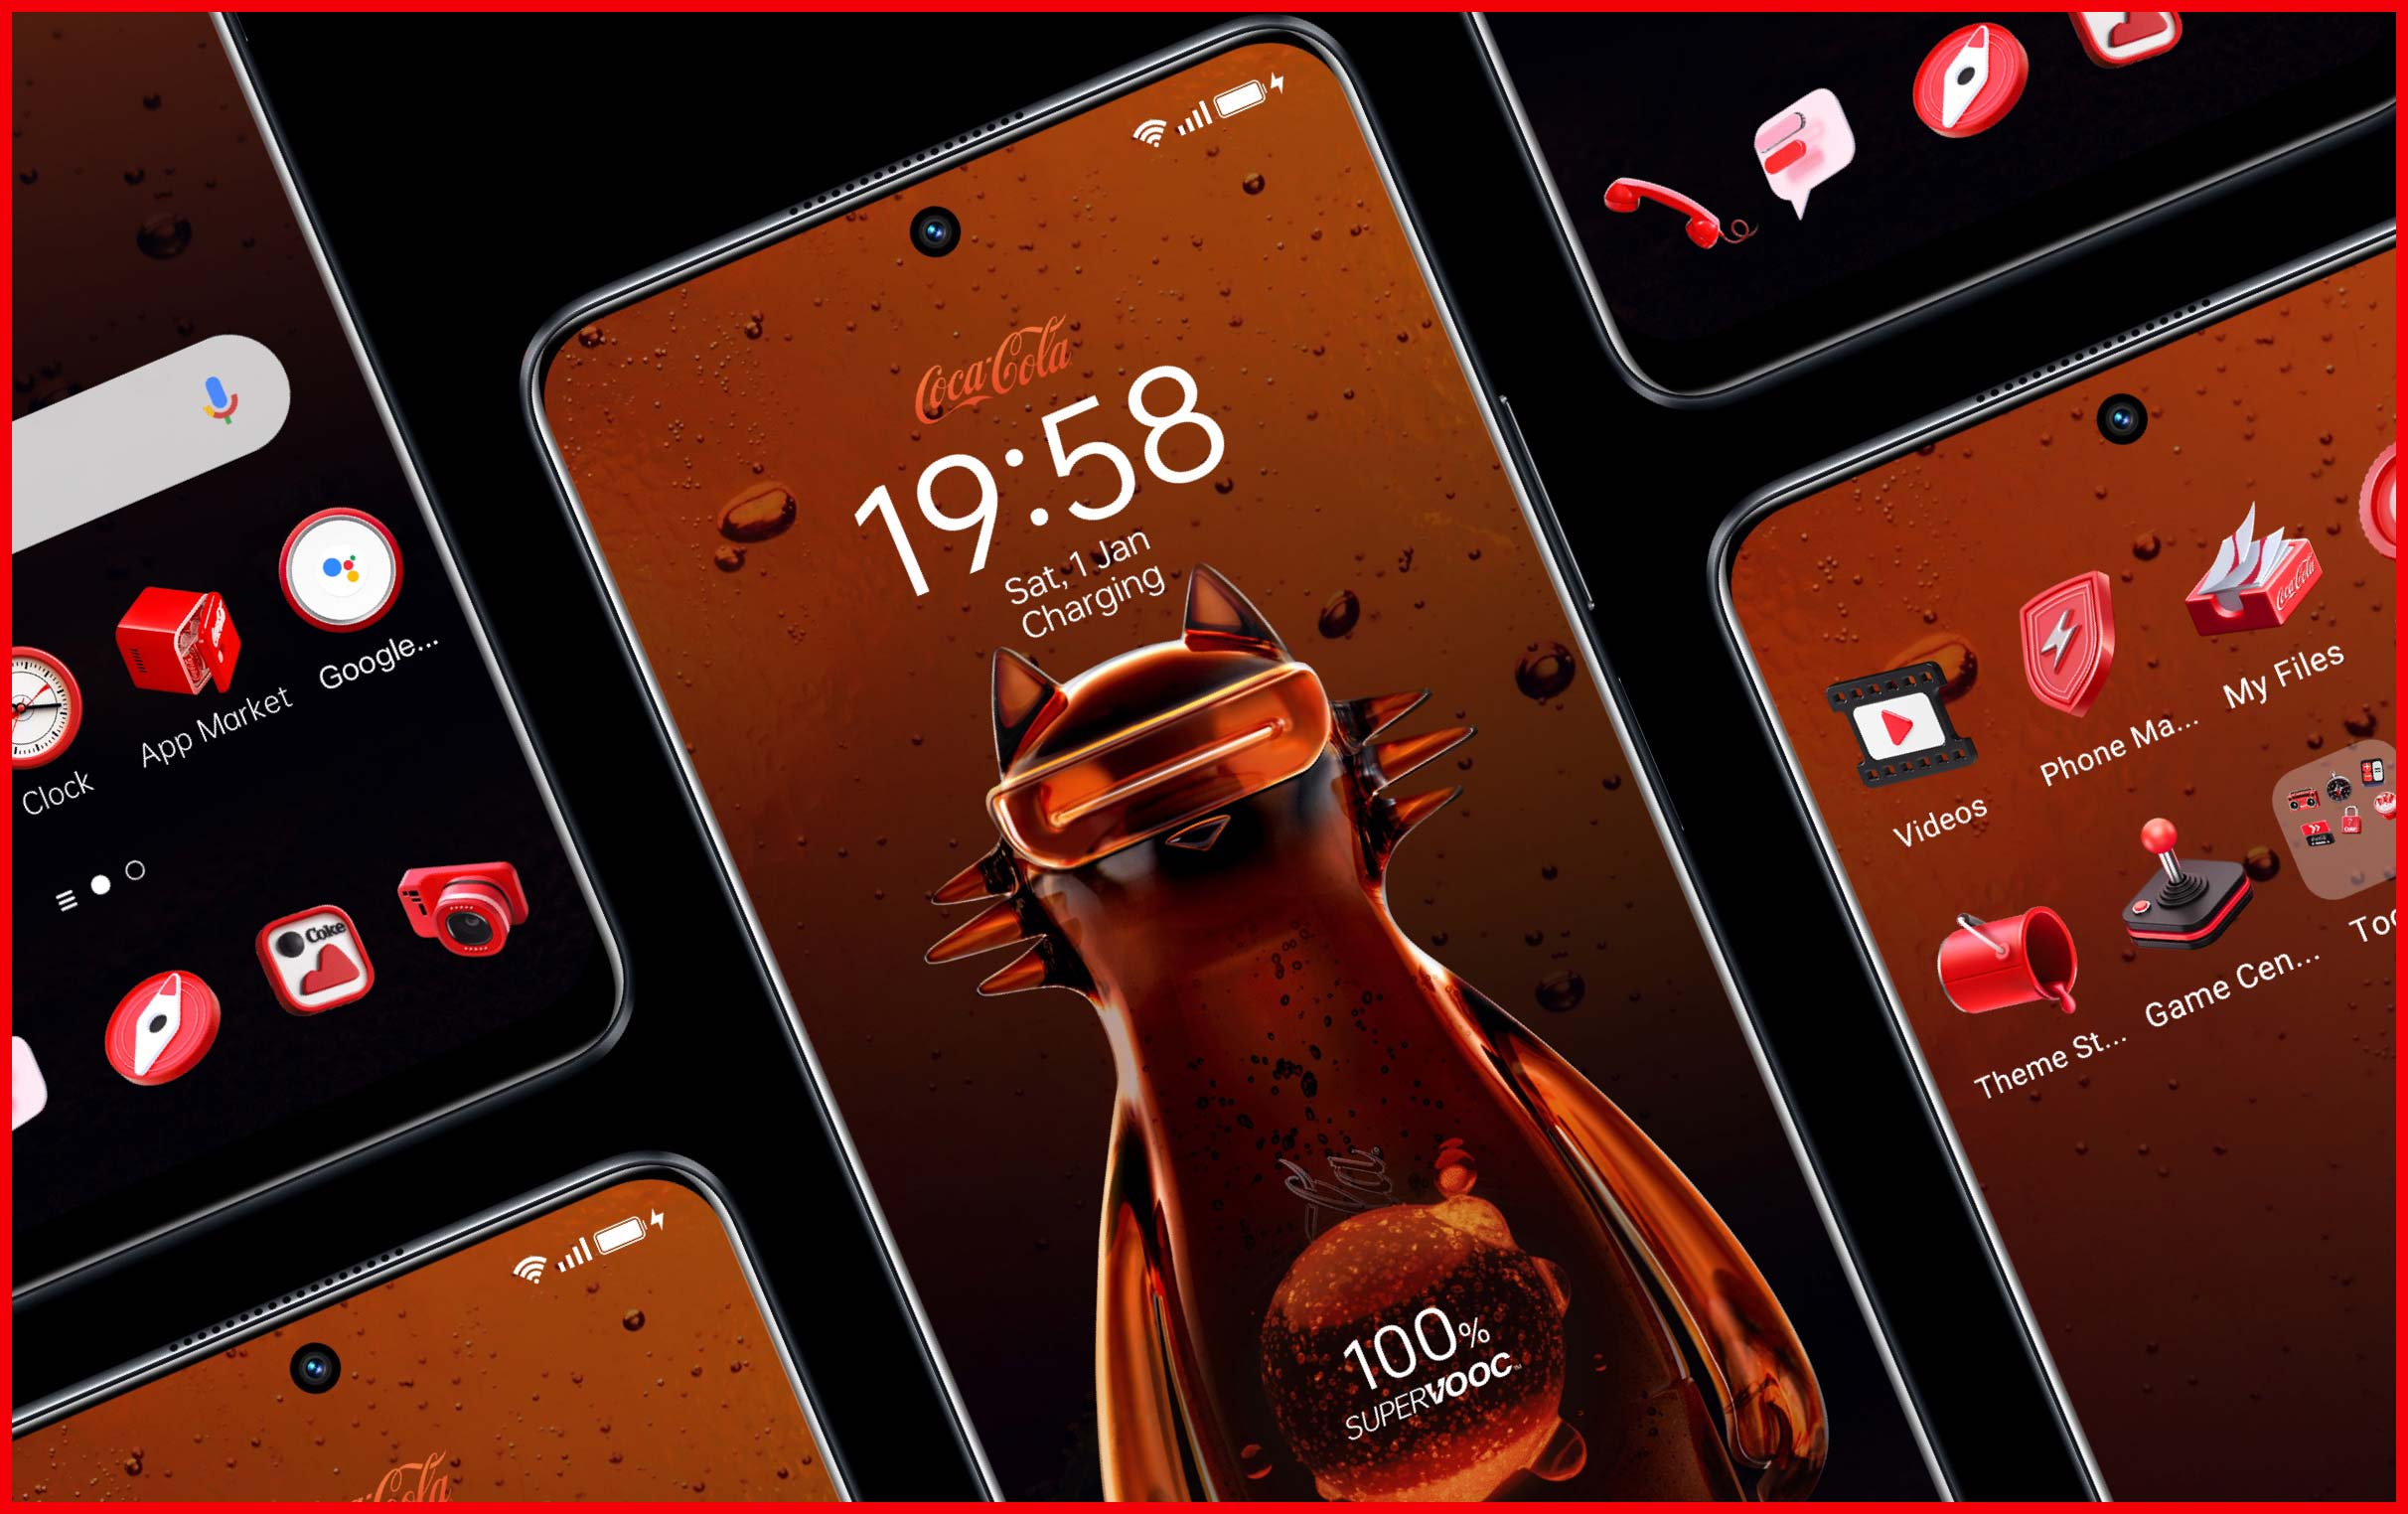 Ponsel ini menampilkan wallpaper unik bertemakan coke